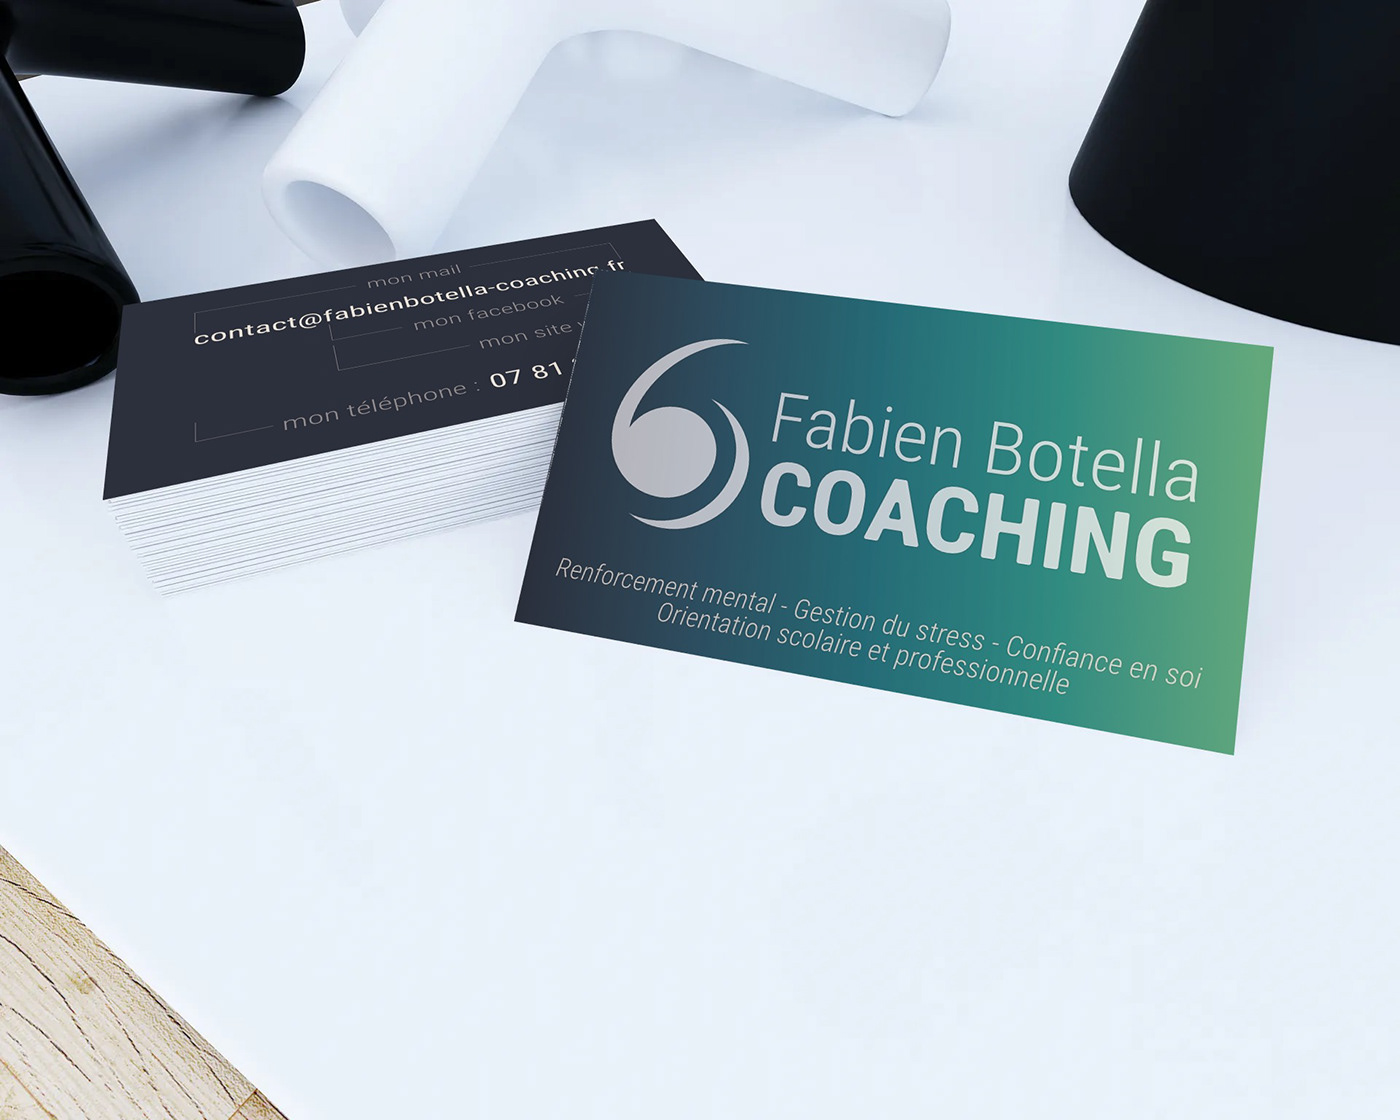 Coach coaching identité visuelle logo